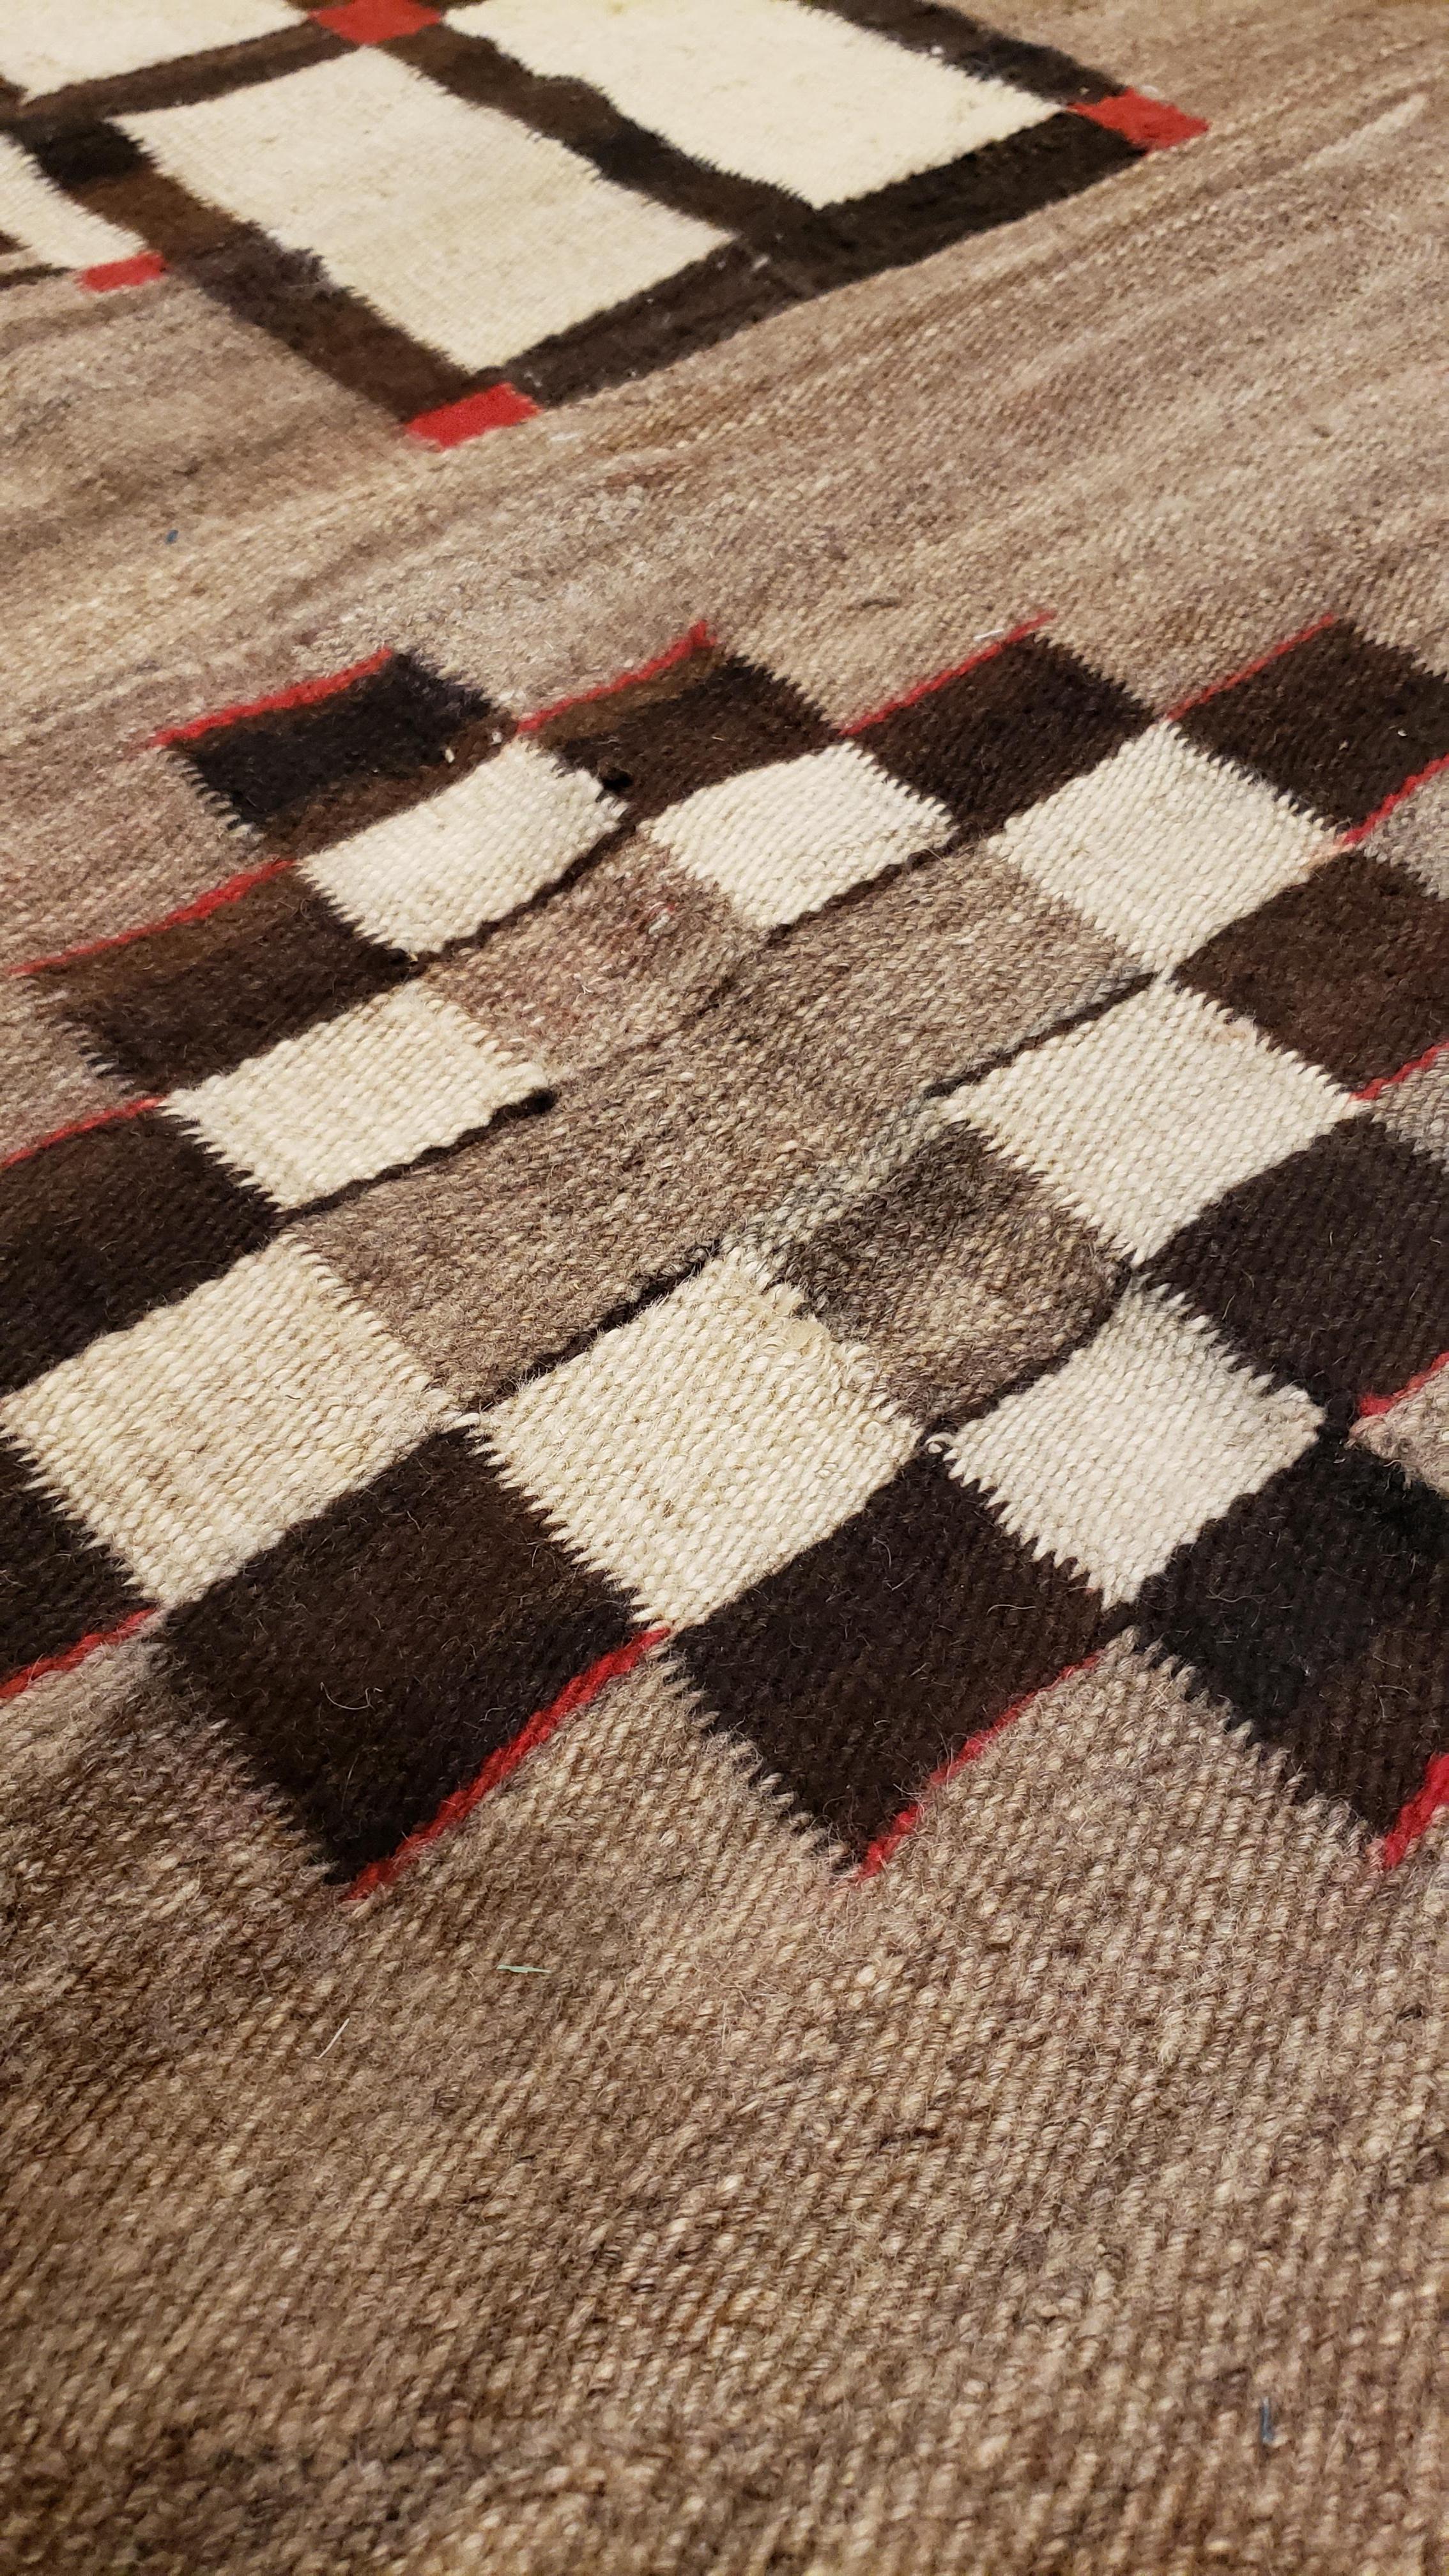 American Antique Navajo Carpet, Oriental Rug, Handmade Wool Rug, Gray, Brown, and Red